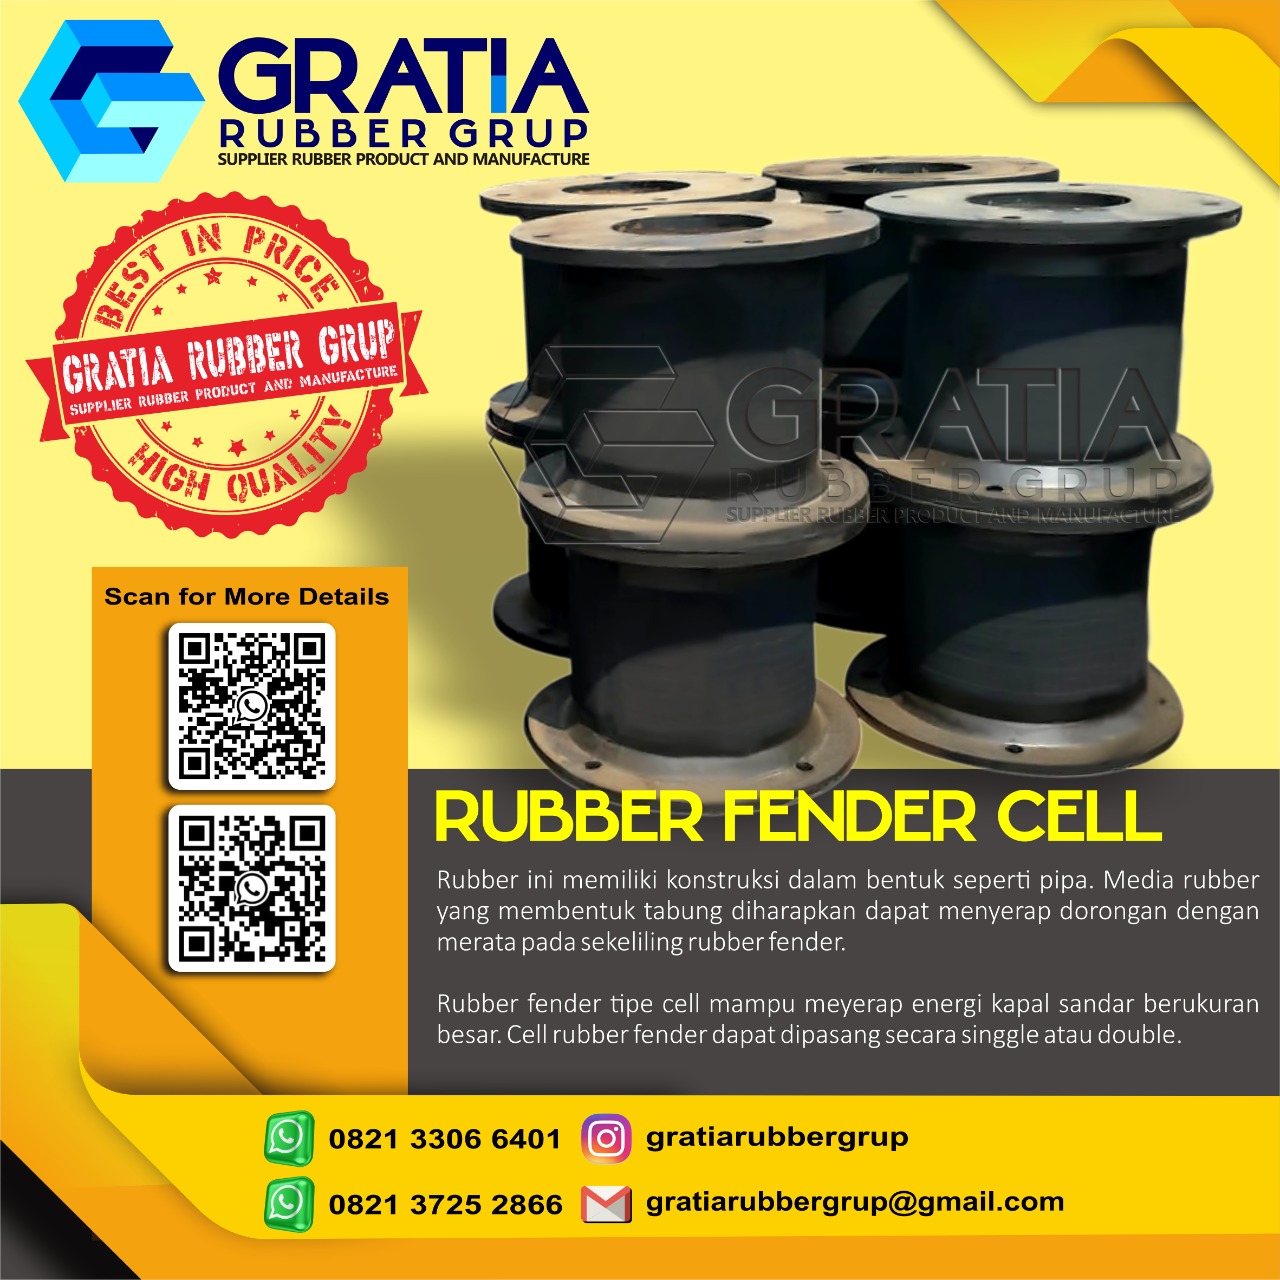 Jual Rubber Fender Berkualitas  Melayani Pengiriman Ke Palembang Sumatera Selatan Hub 0821 3306 0461